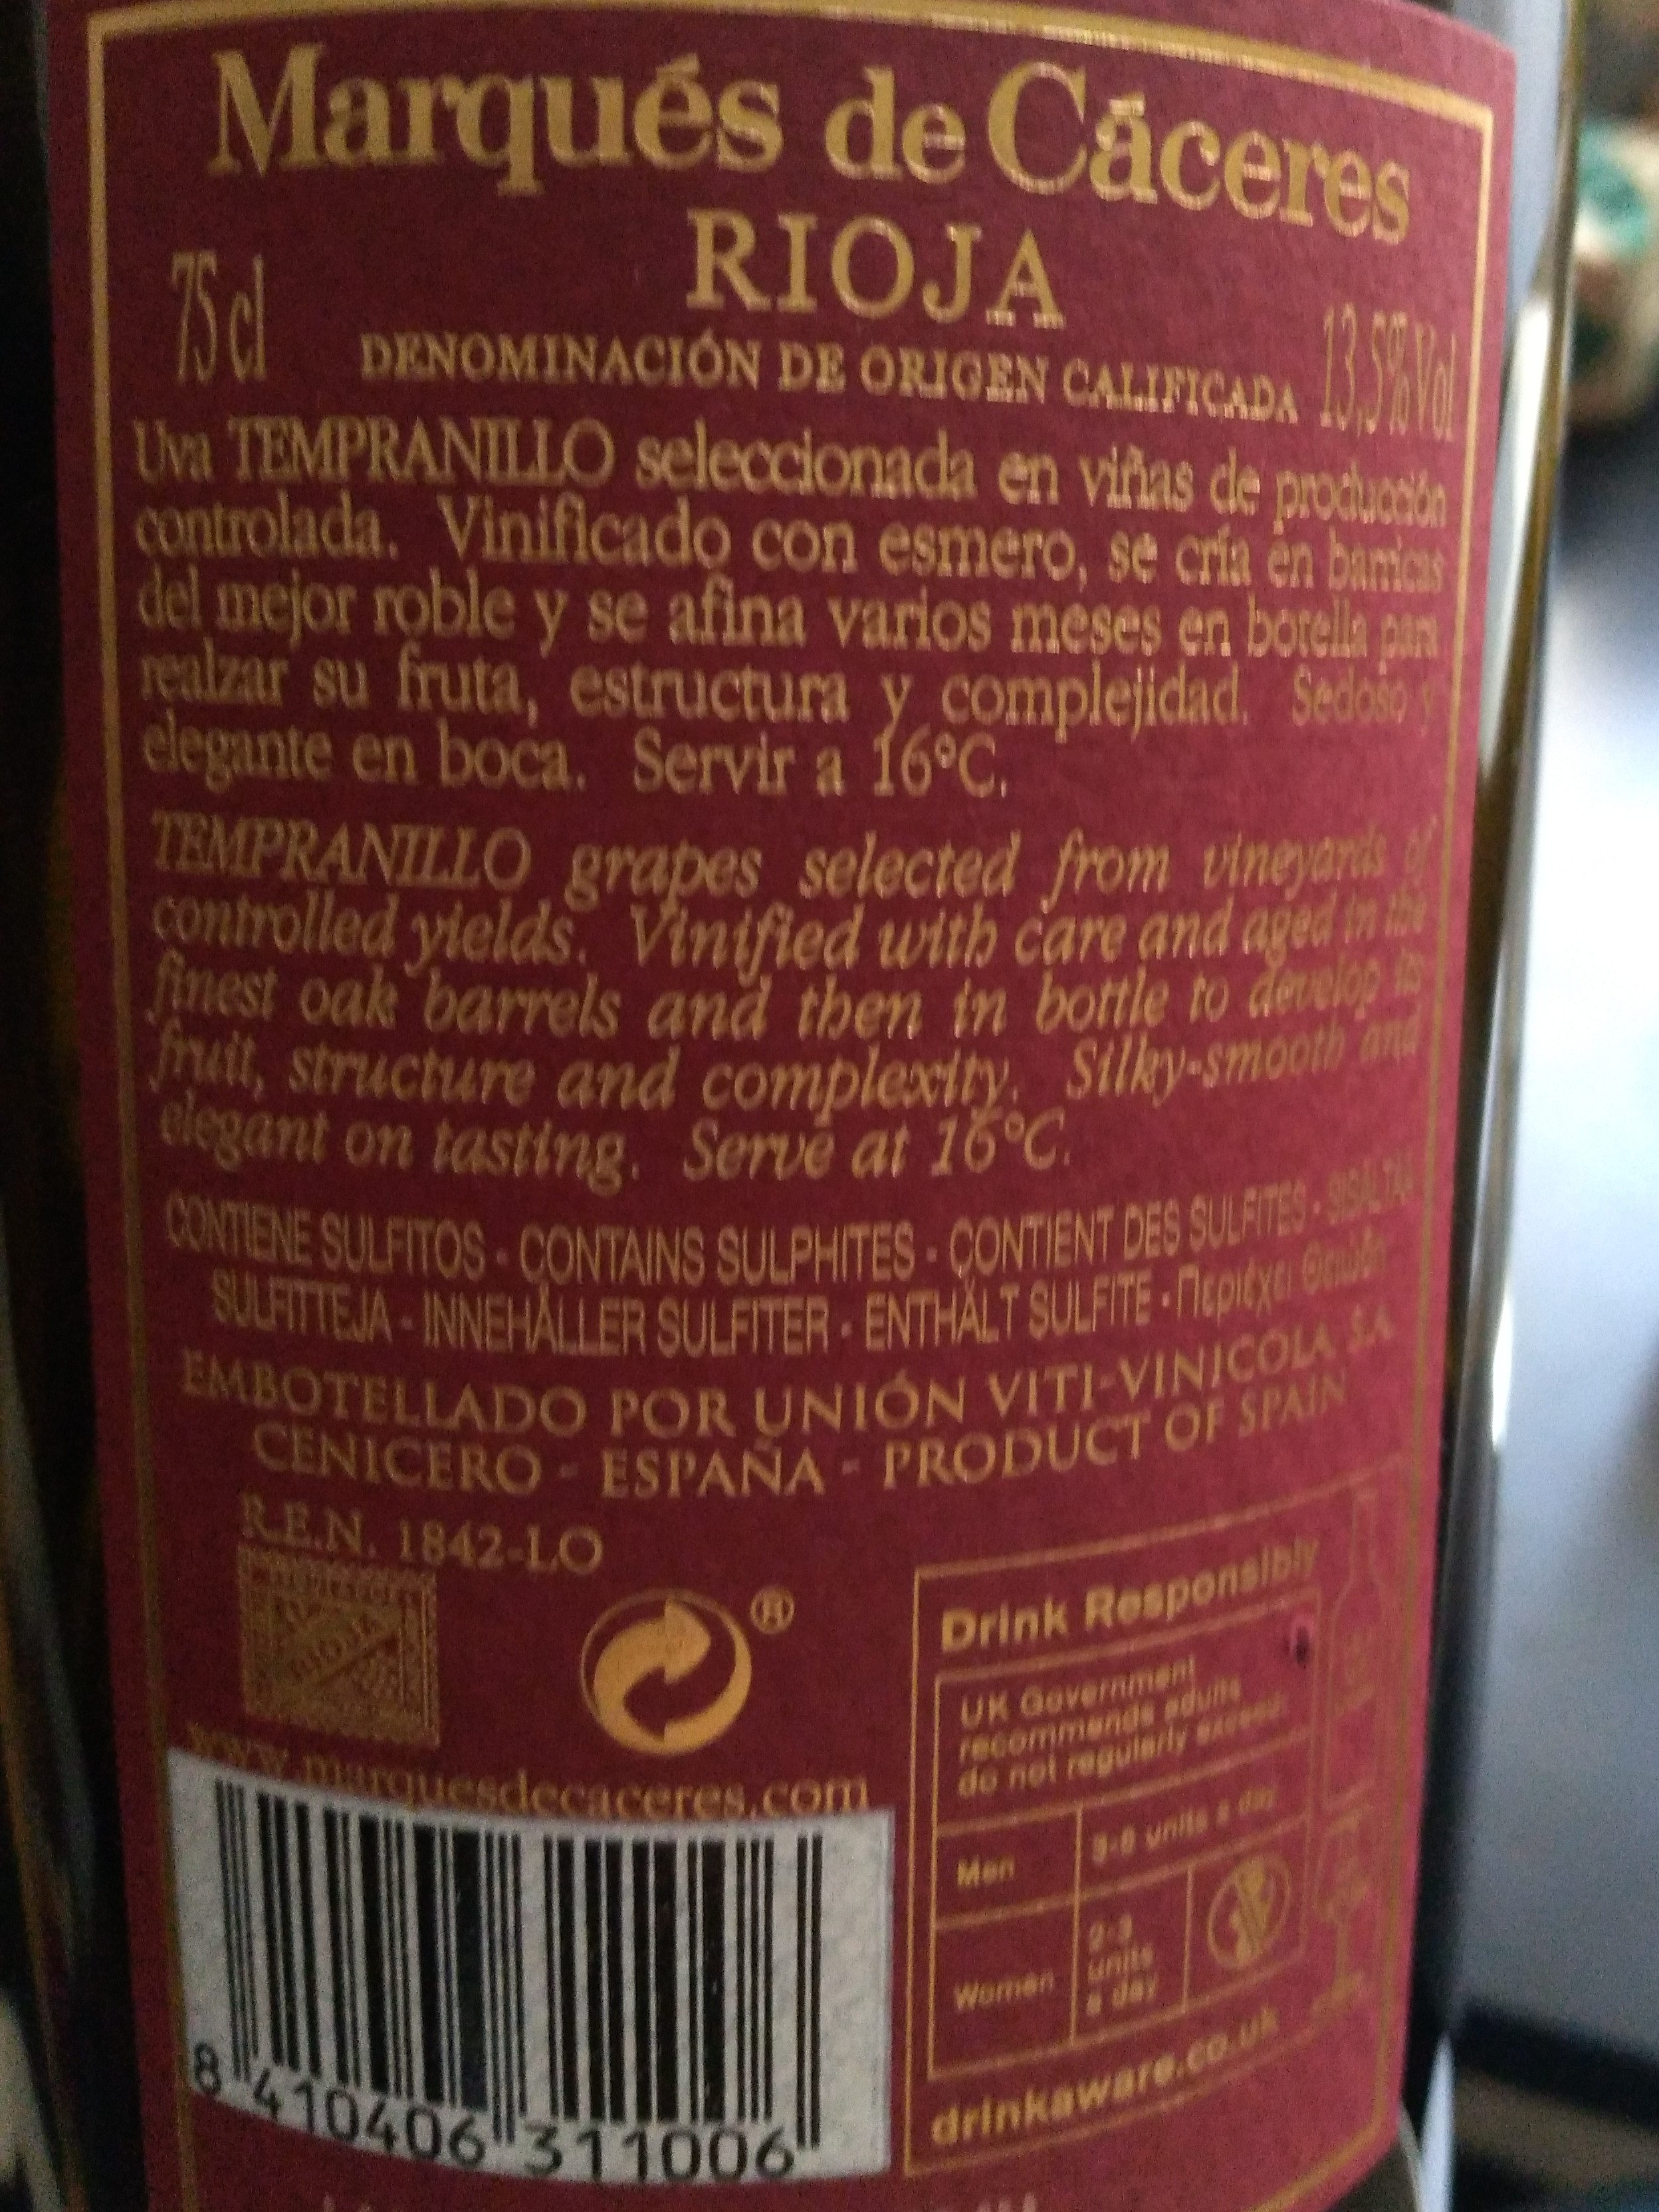 Espagne - Rioja, rouge - Ingredients - es